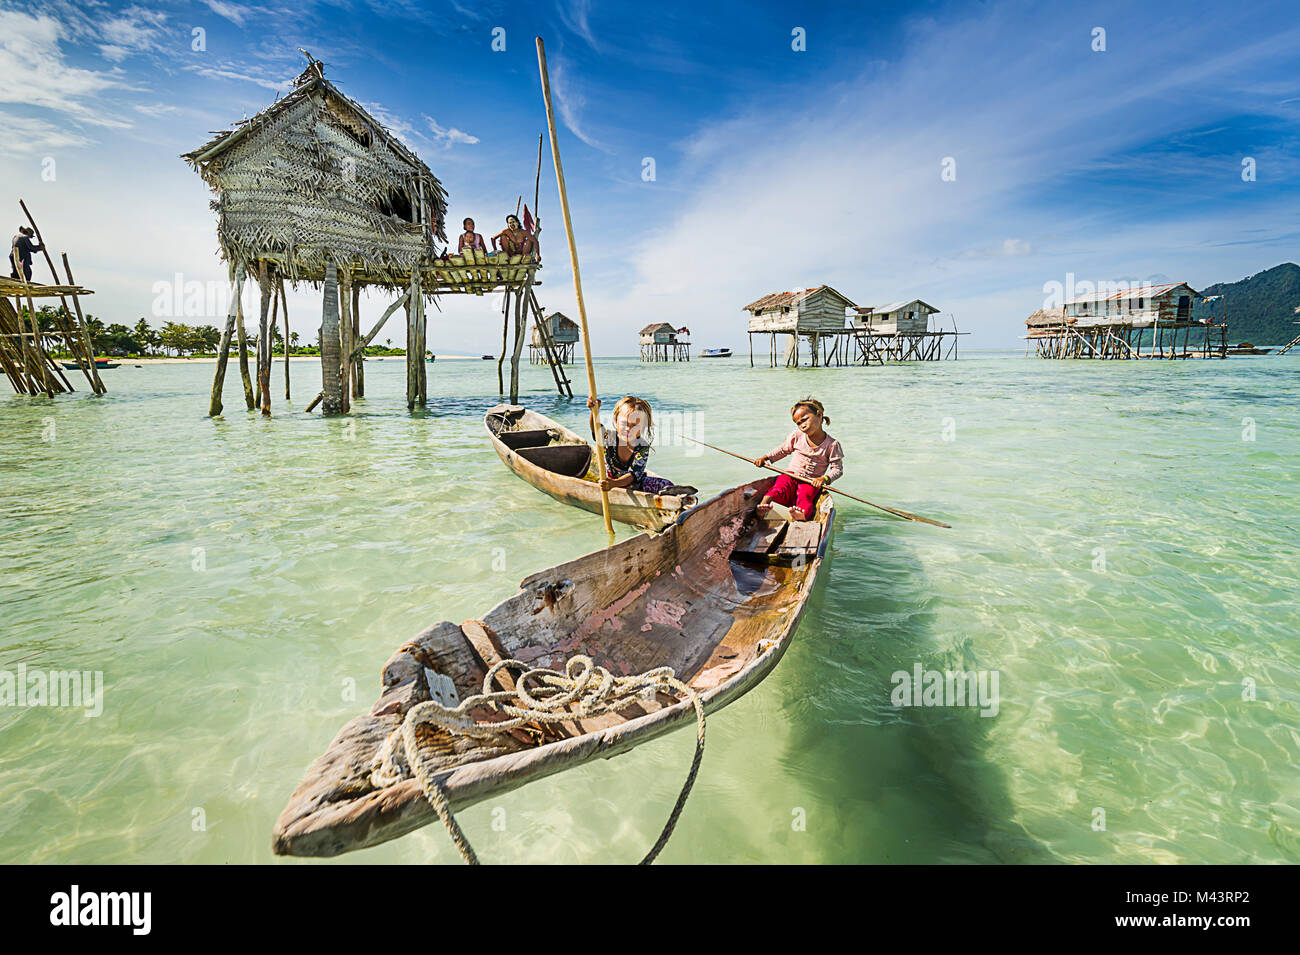 Les Bajau Laut sont connus sous le nom de "Gitans" en raison de leur nomadisme, mode de vie de marin. Banque D'Images